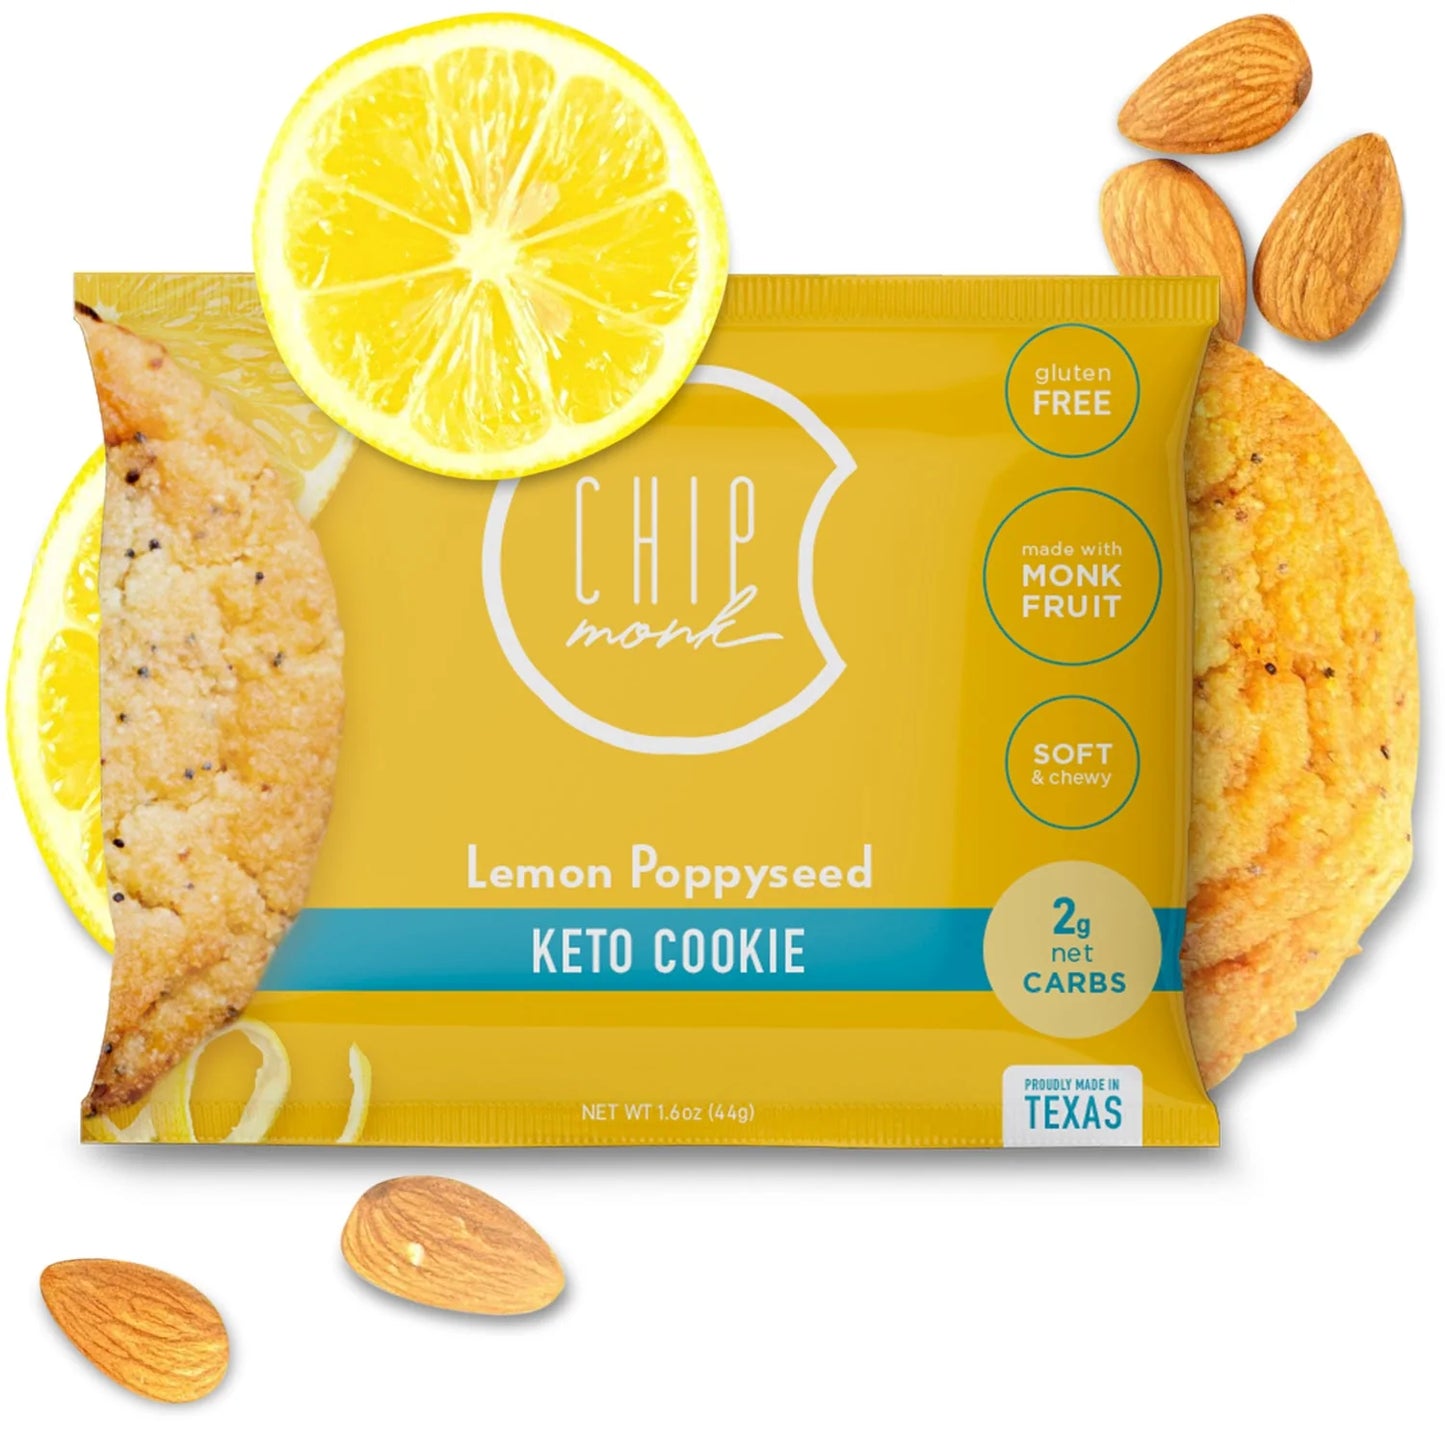 Keto-Friendly Gluten Free Cookies by Chipmonk Baking